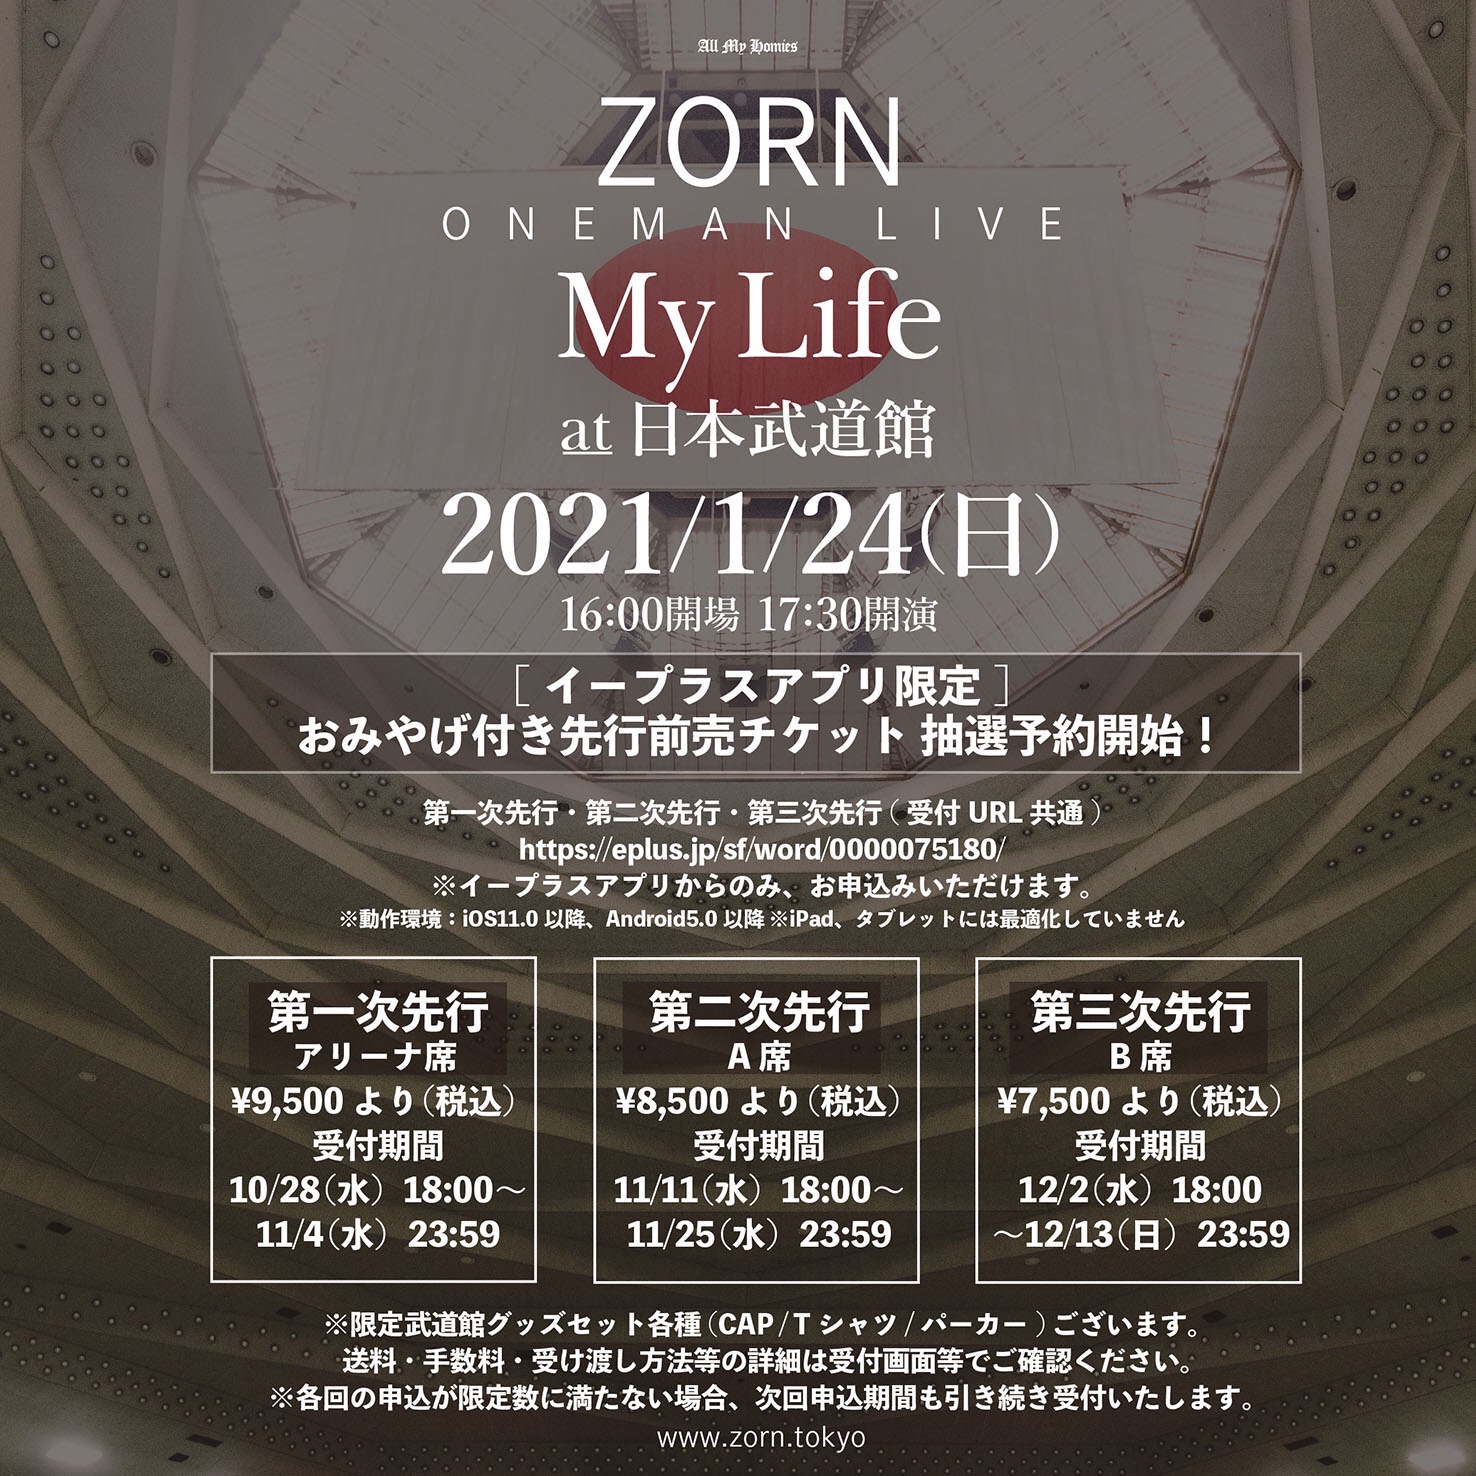 【NEWS】ZORNが日本武道館でワンマンライブを2021年1月に開催 